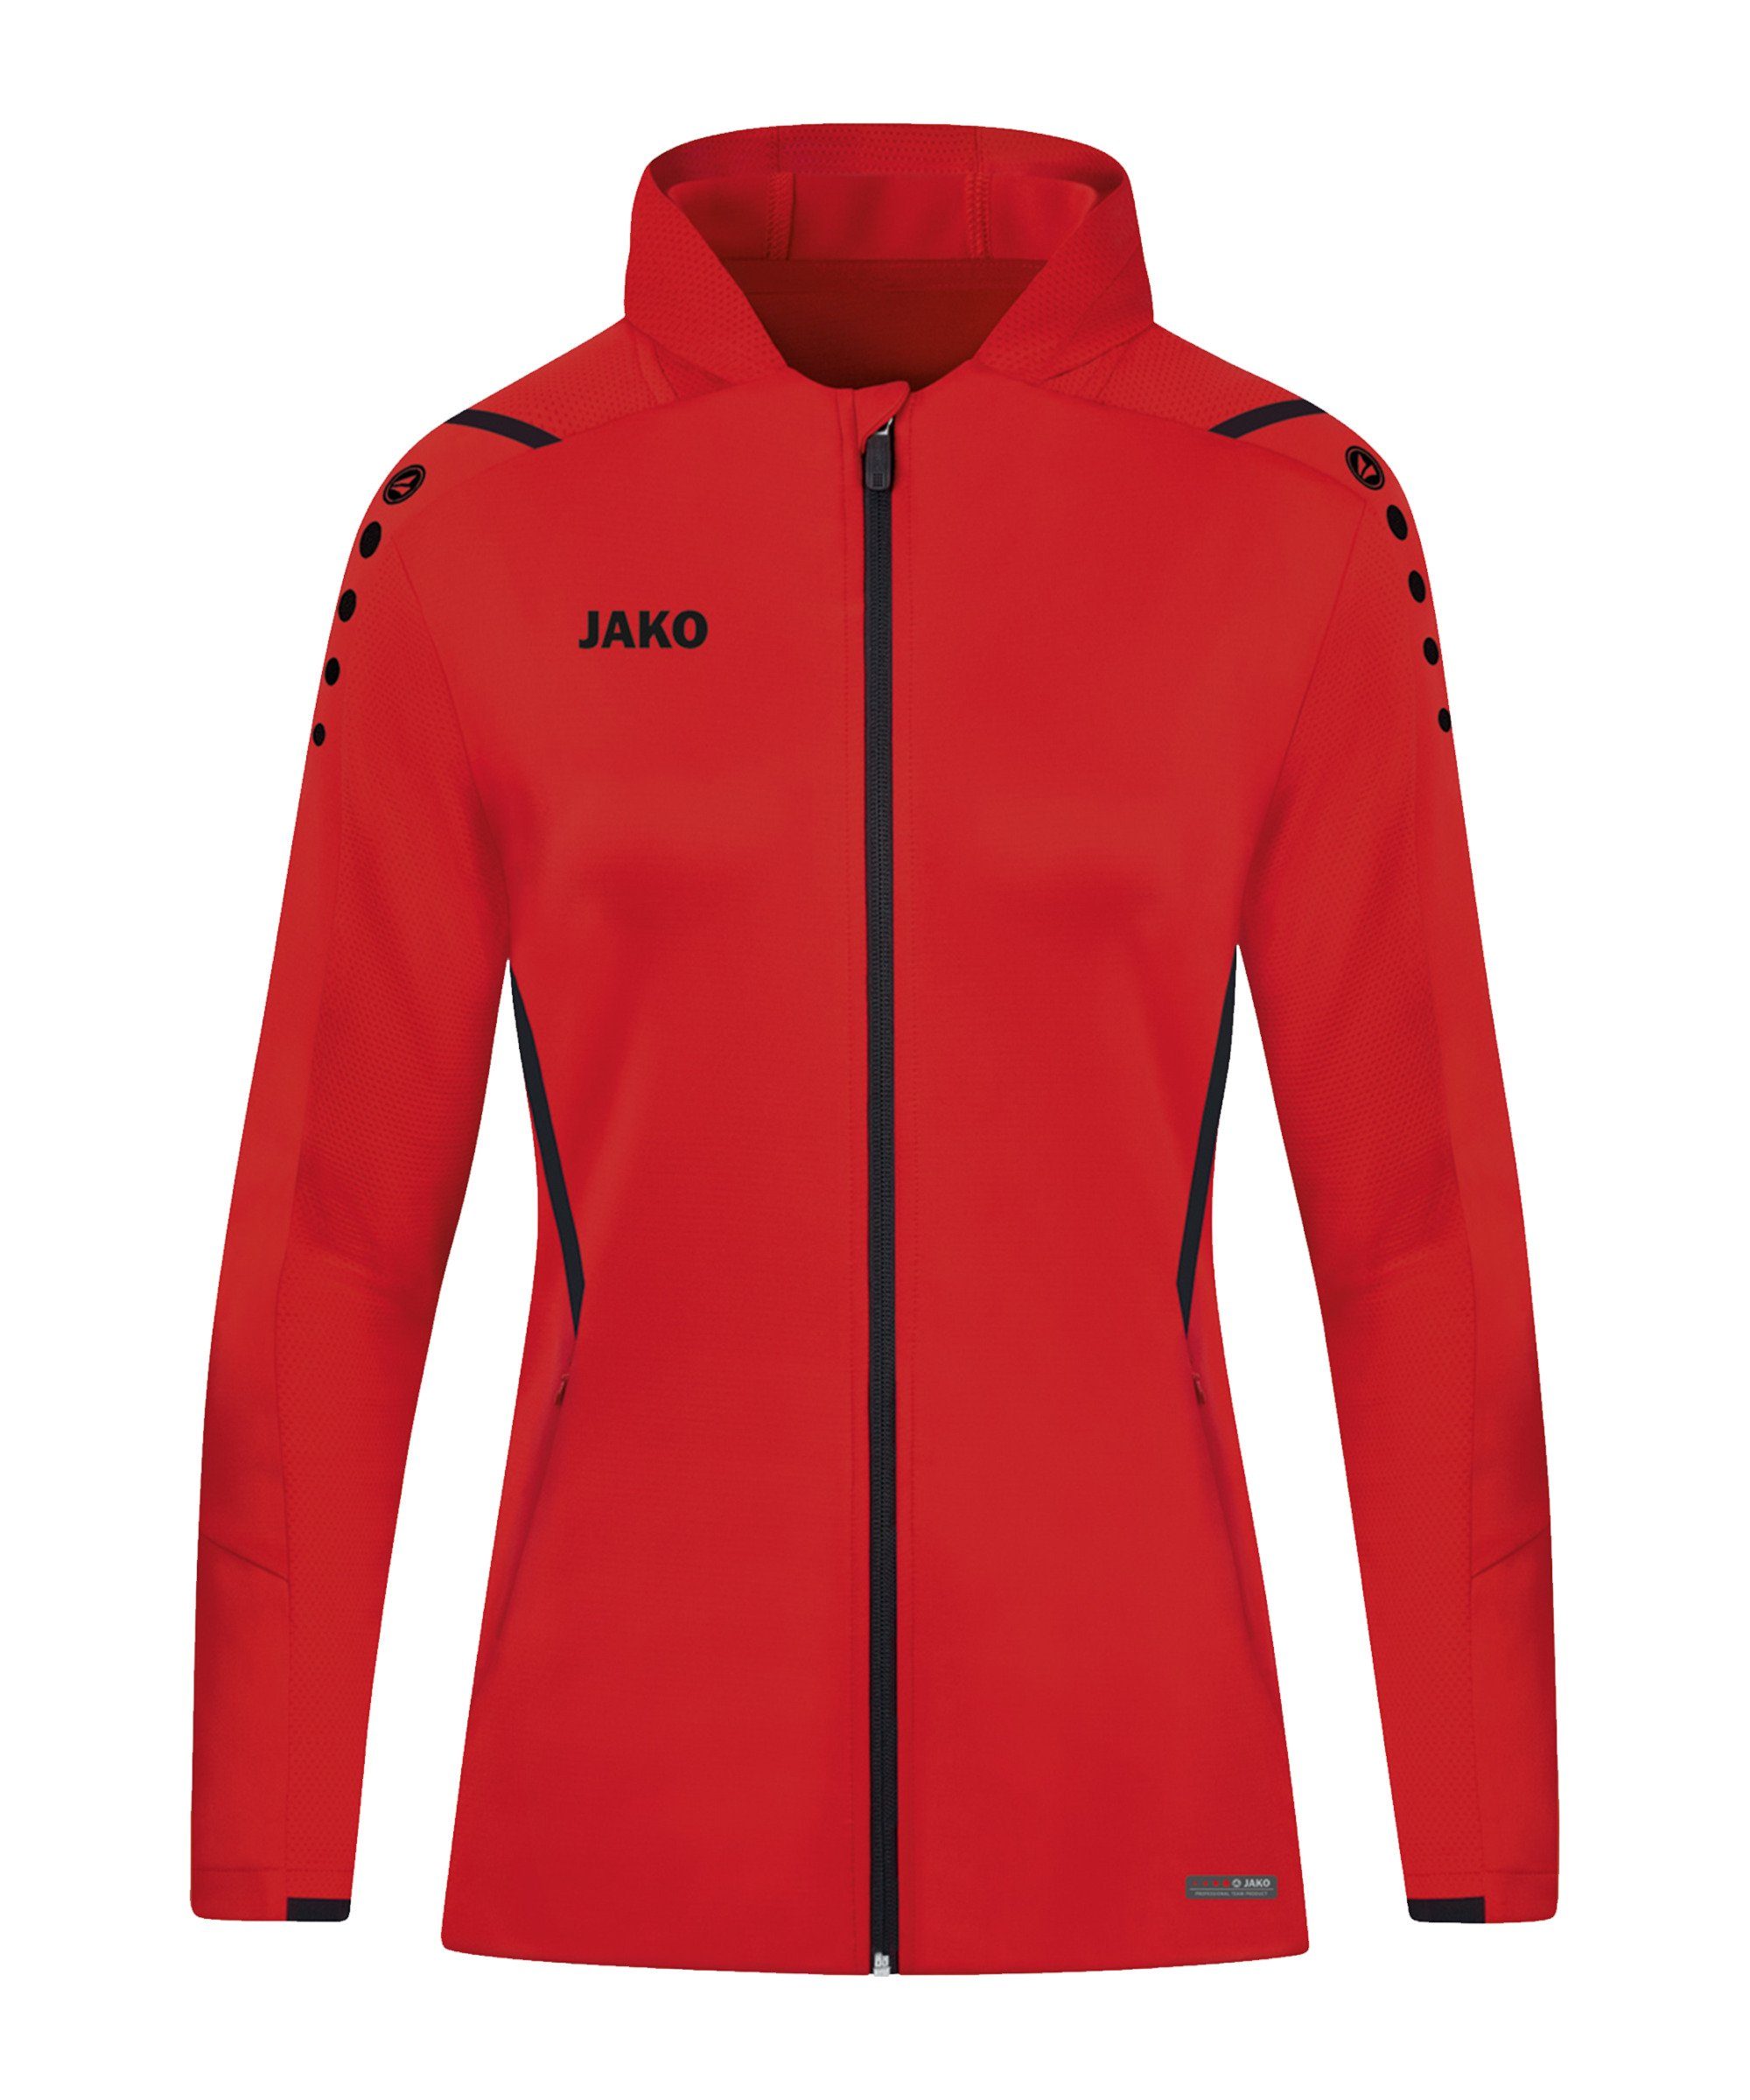 JAKO Präsentationsjacke Gr 42 Damen weiß Jacke Trainingsjacke Sport Frauen 